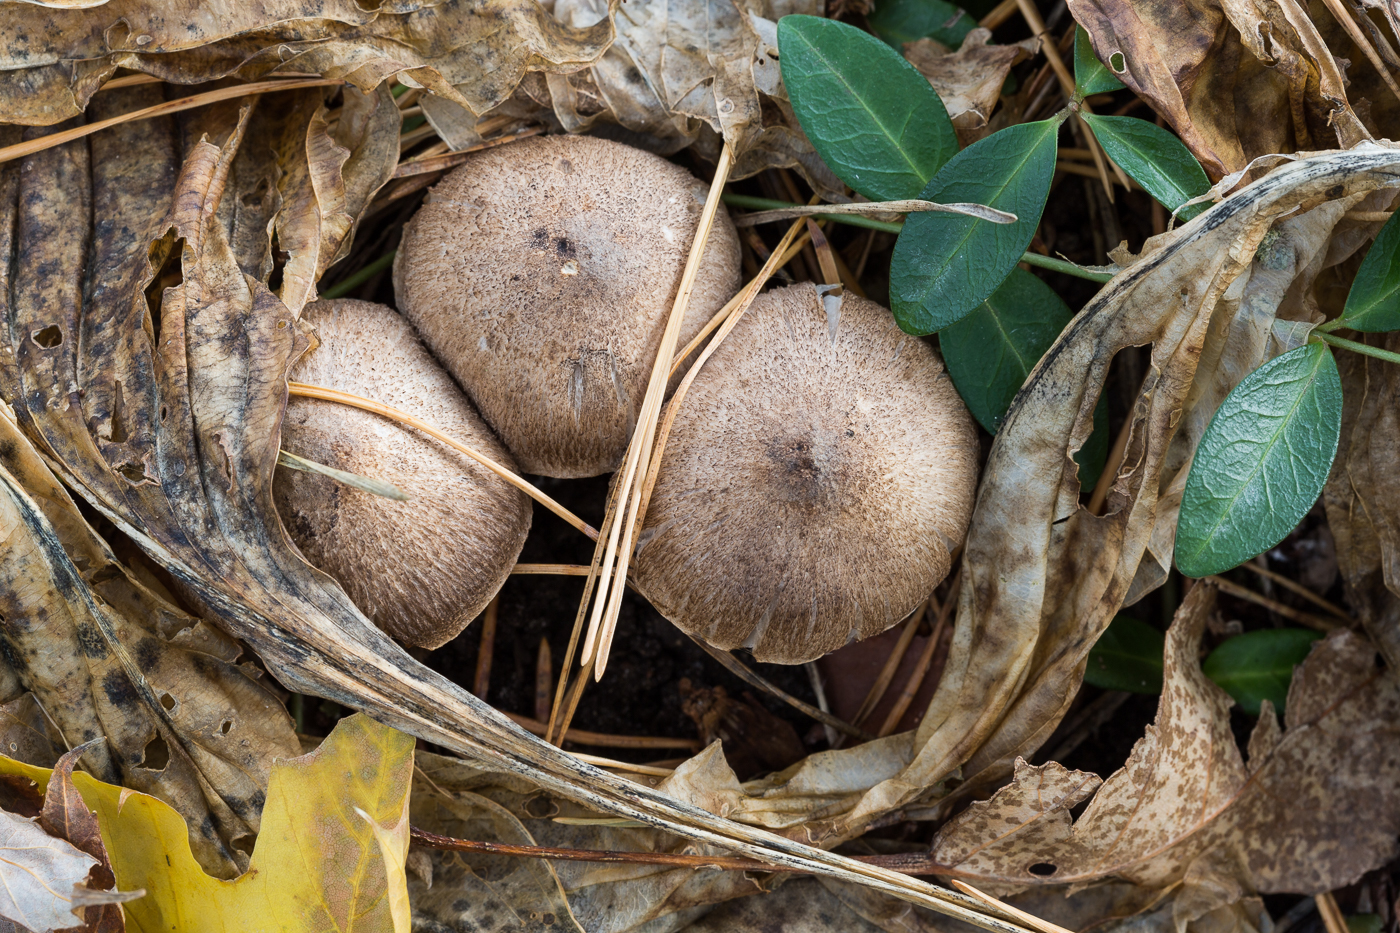 Hosta Leaves and Mushrooms